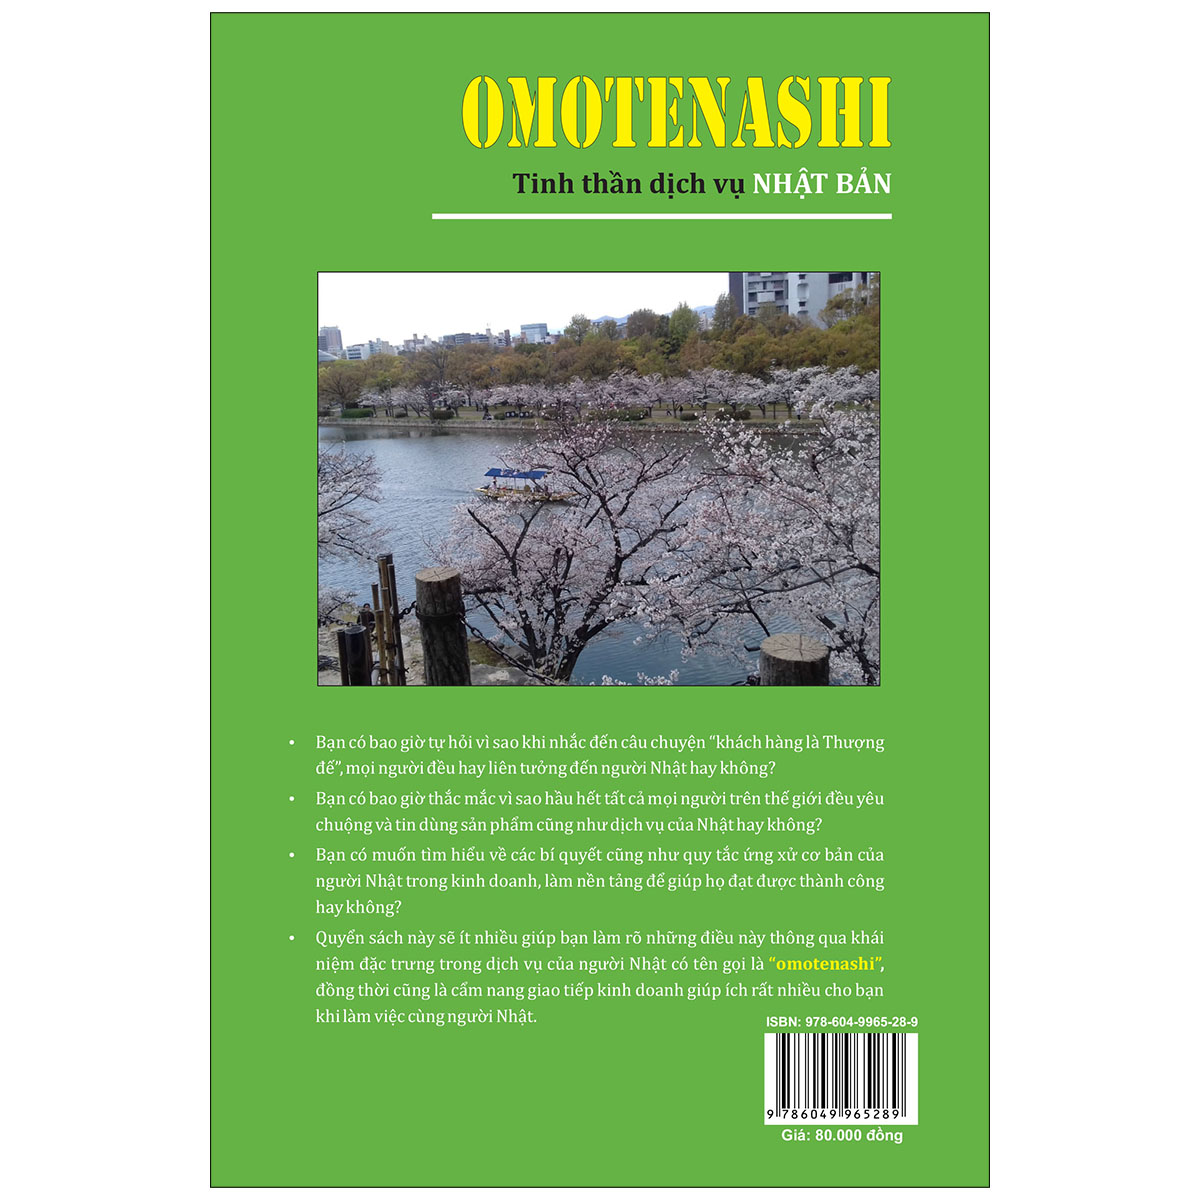 Omotenashi -  Tinh Thần Dịch Vụ Nhật Bản - Cẩm Nang Giao Tiếp Kinh Doanh Với Người Nhật